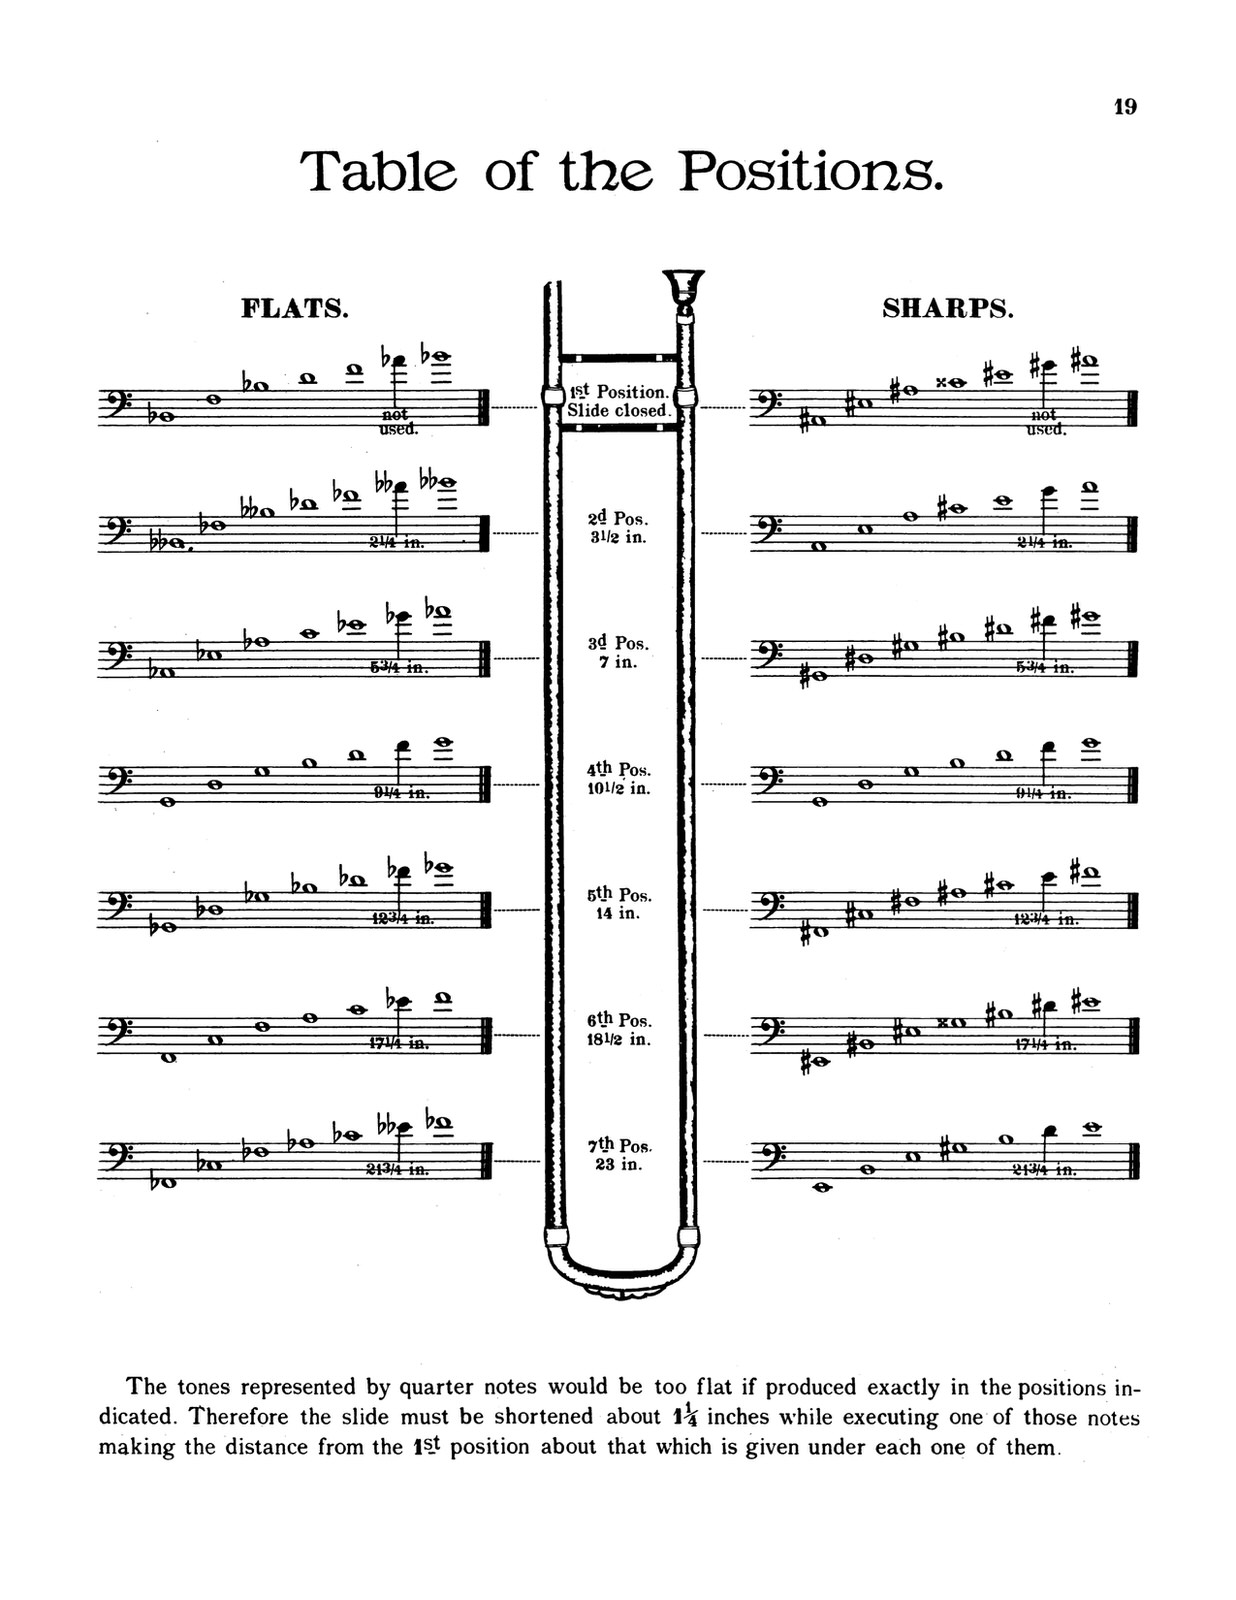 beginner trombone music slide position chart